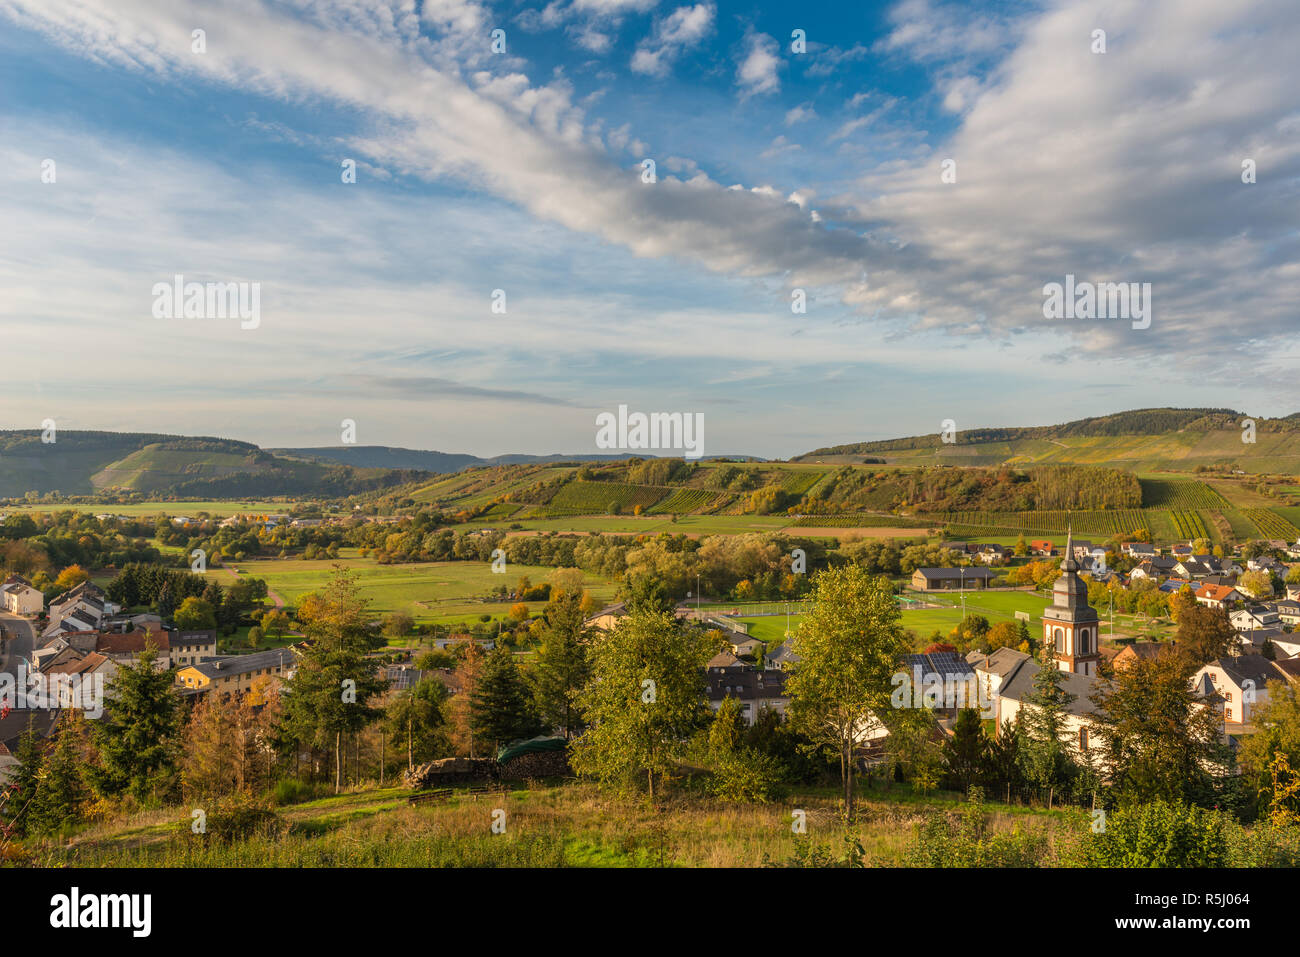 Le village de Irsch, Saarburg, au milieu des vignes et le paysage vallonné de Rhineland-Palantine, Germany, Europe Banque D'Images